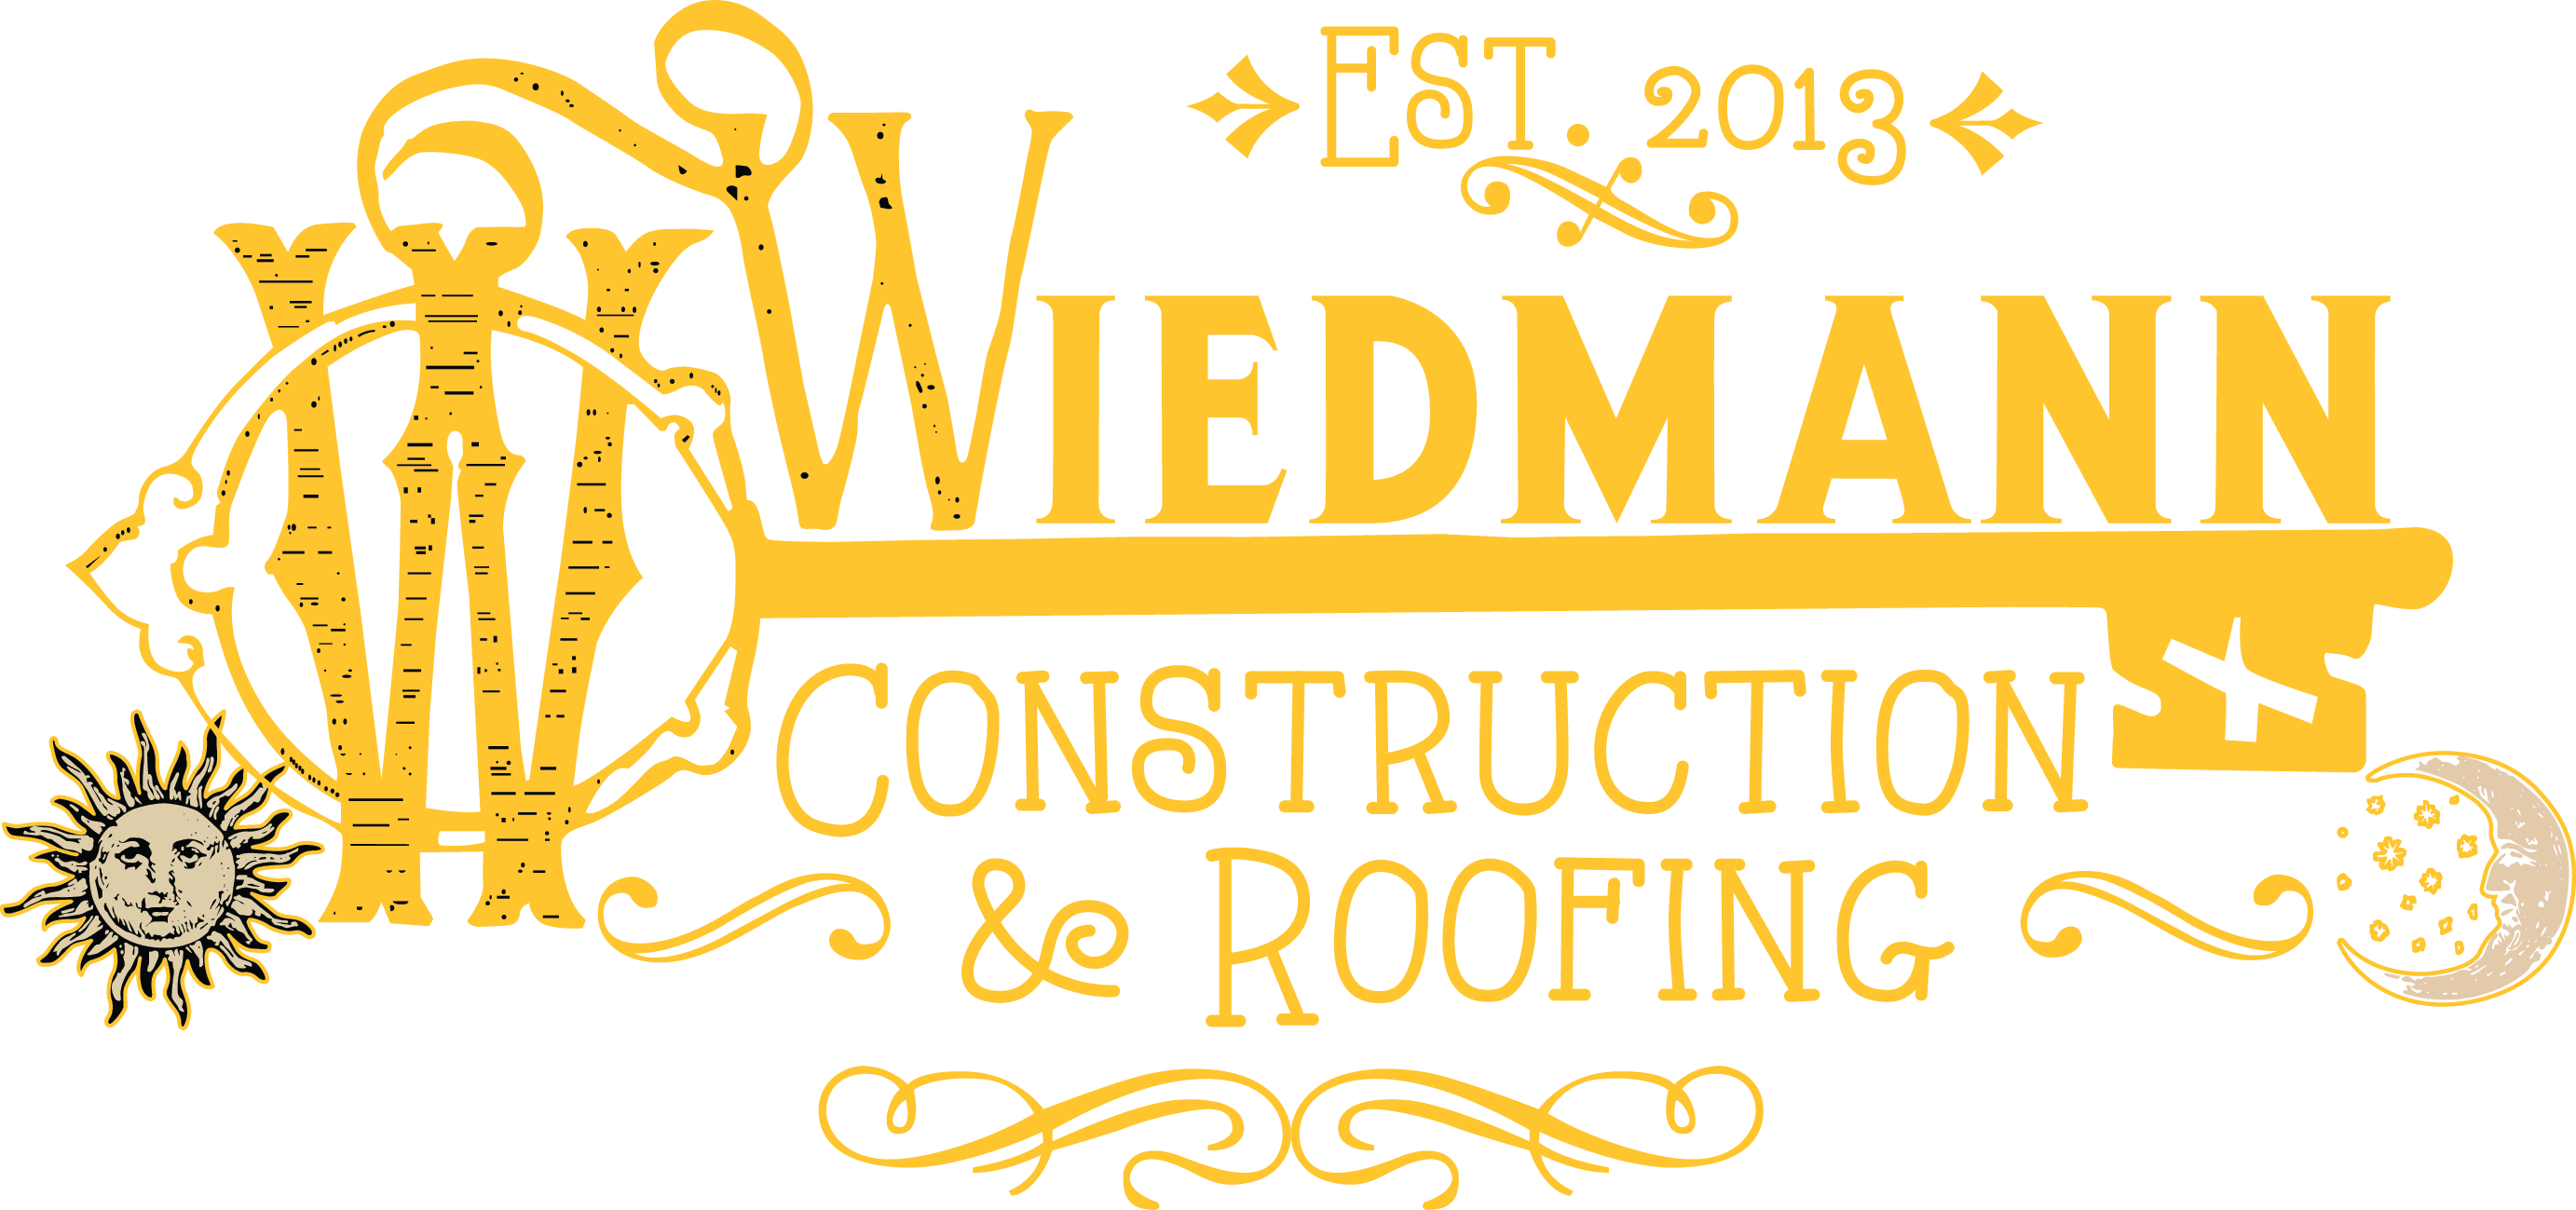 Wiedmann Roofing & Construction